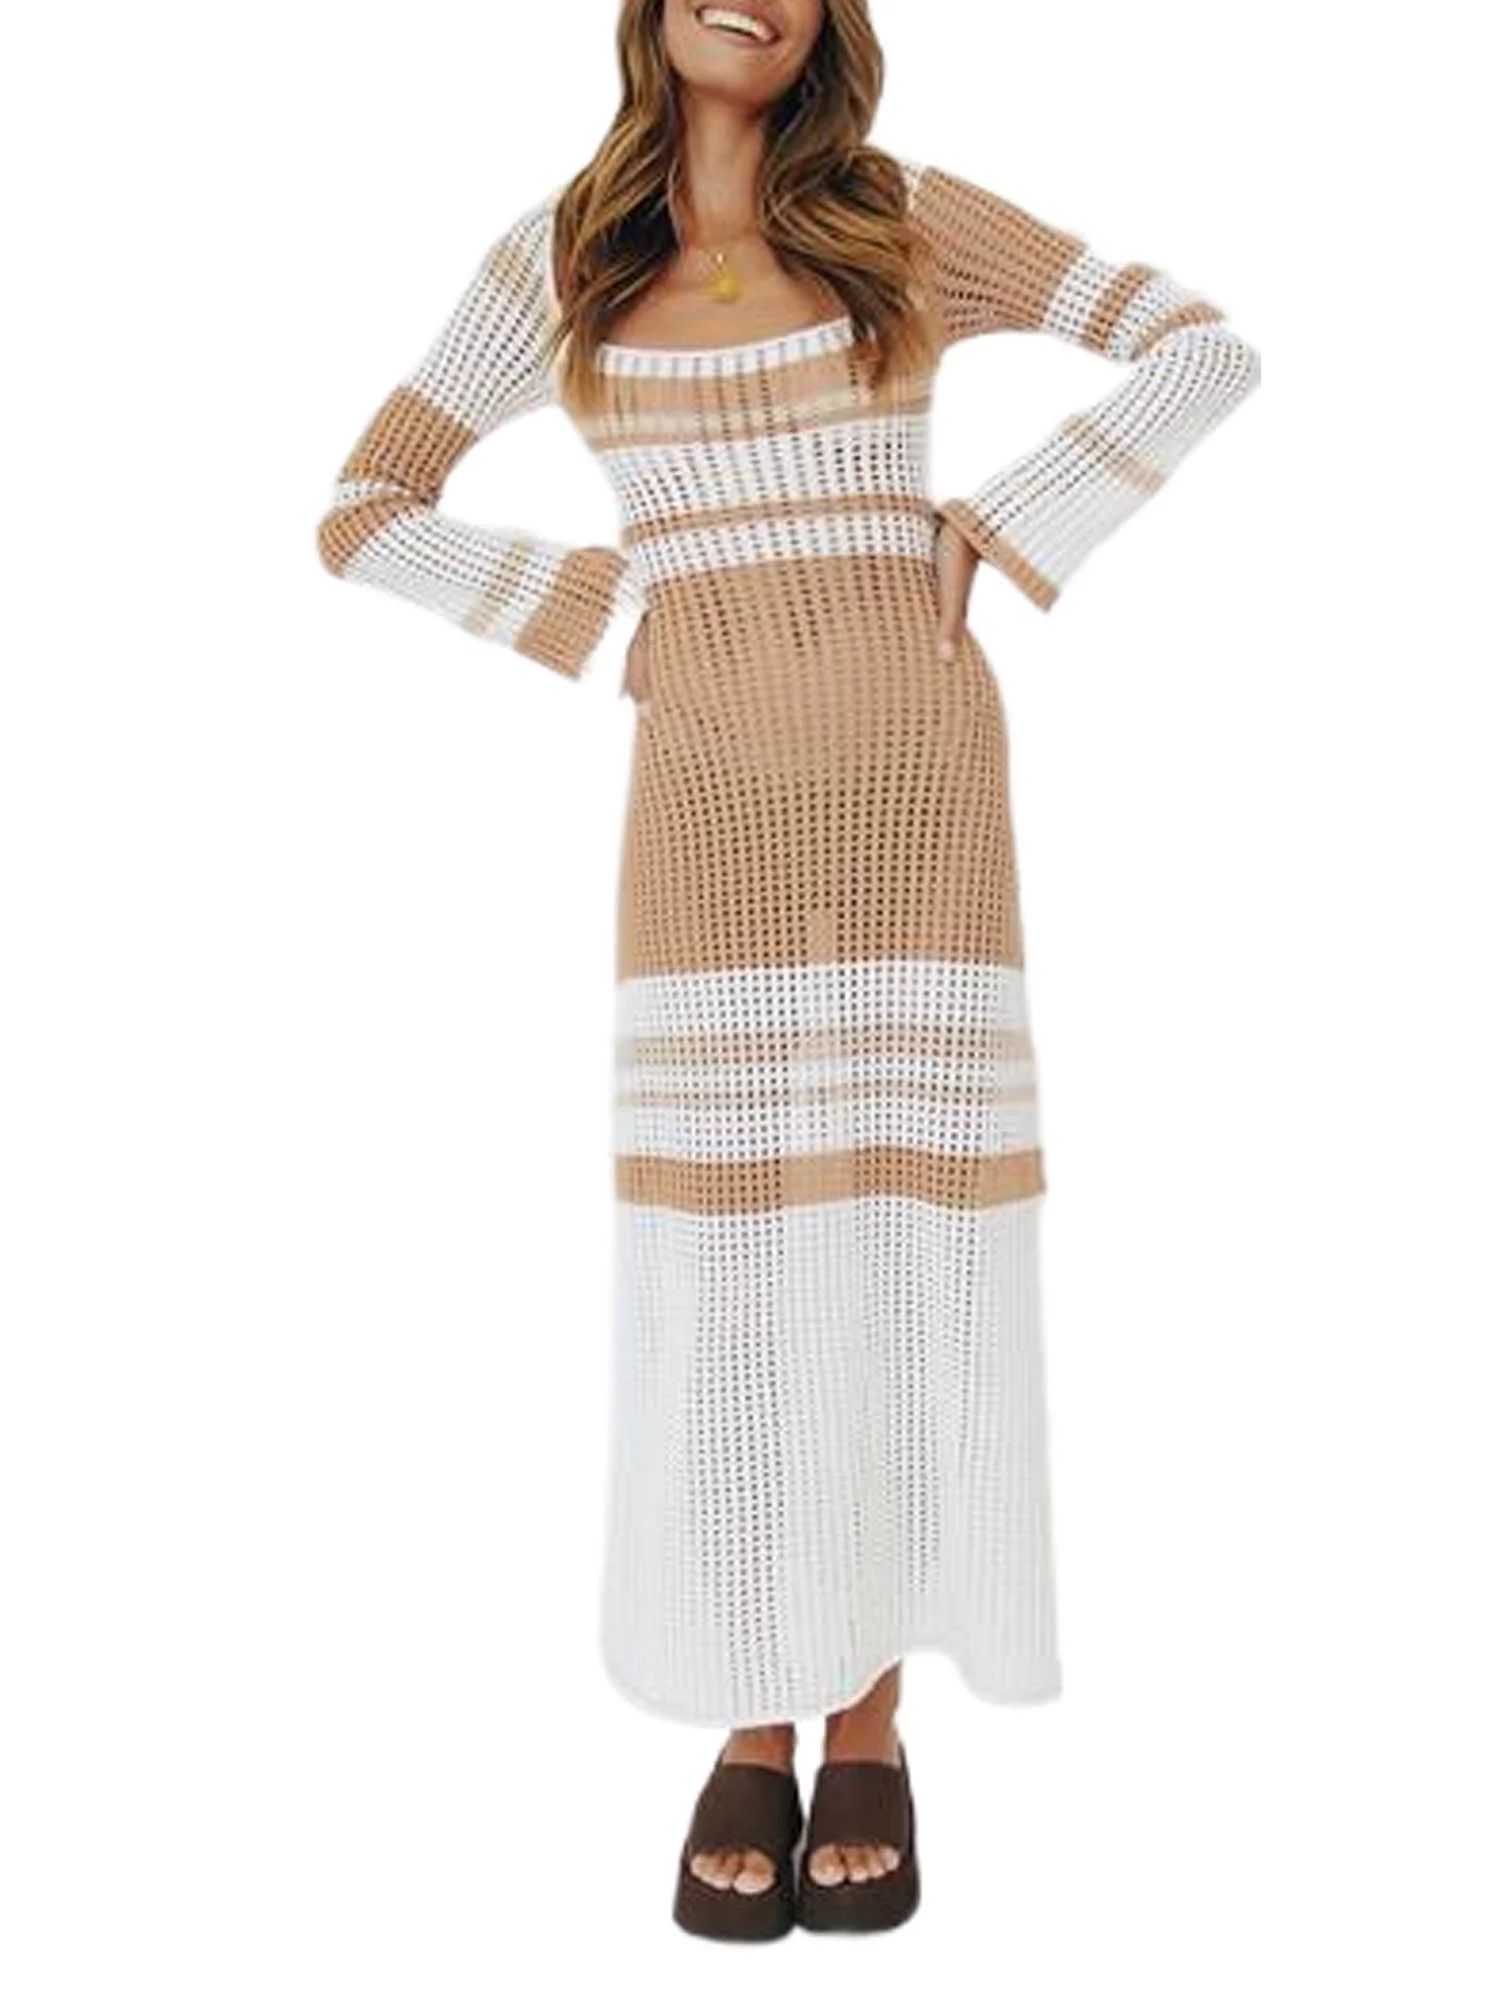 wybzd Women Crochet Knit Long Dress Patchwork Hollow Out Maxi Dress Striped Cover Up Summer Beach... | Walmart (US)